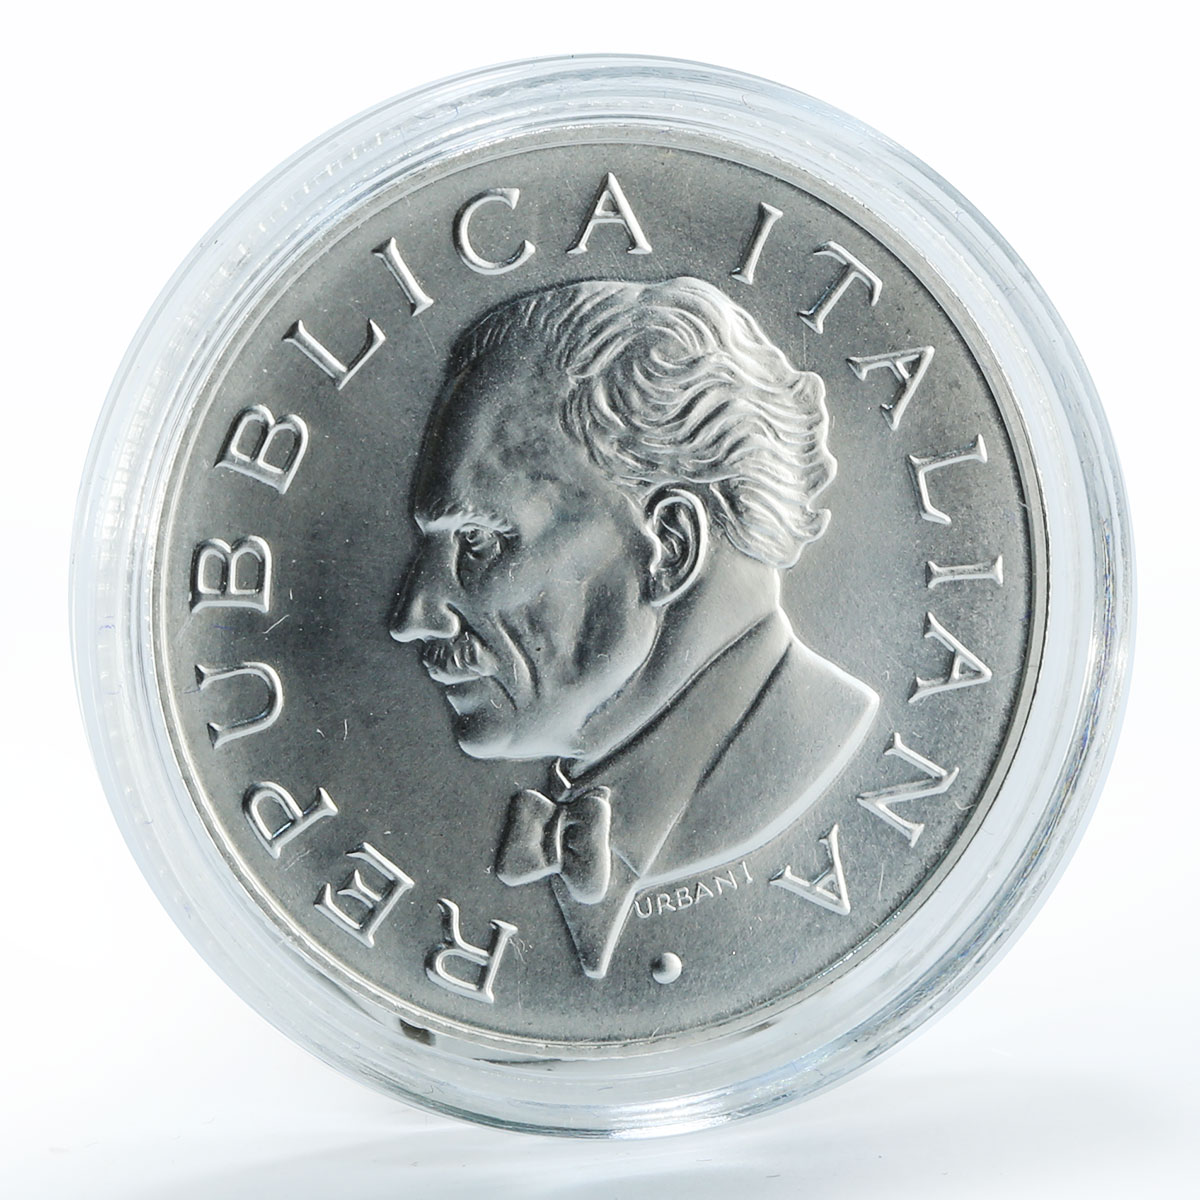 Italy, Italiana, 5 Euro, Arturo Toscanini, 50th Anniversary of the death, 2007